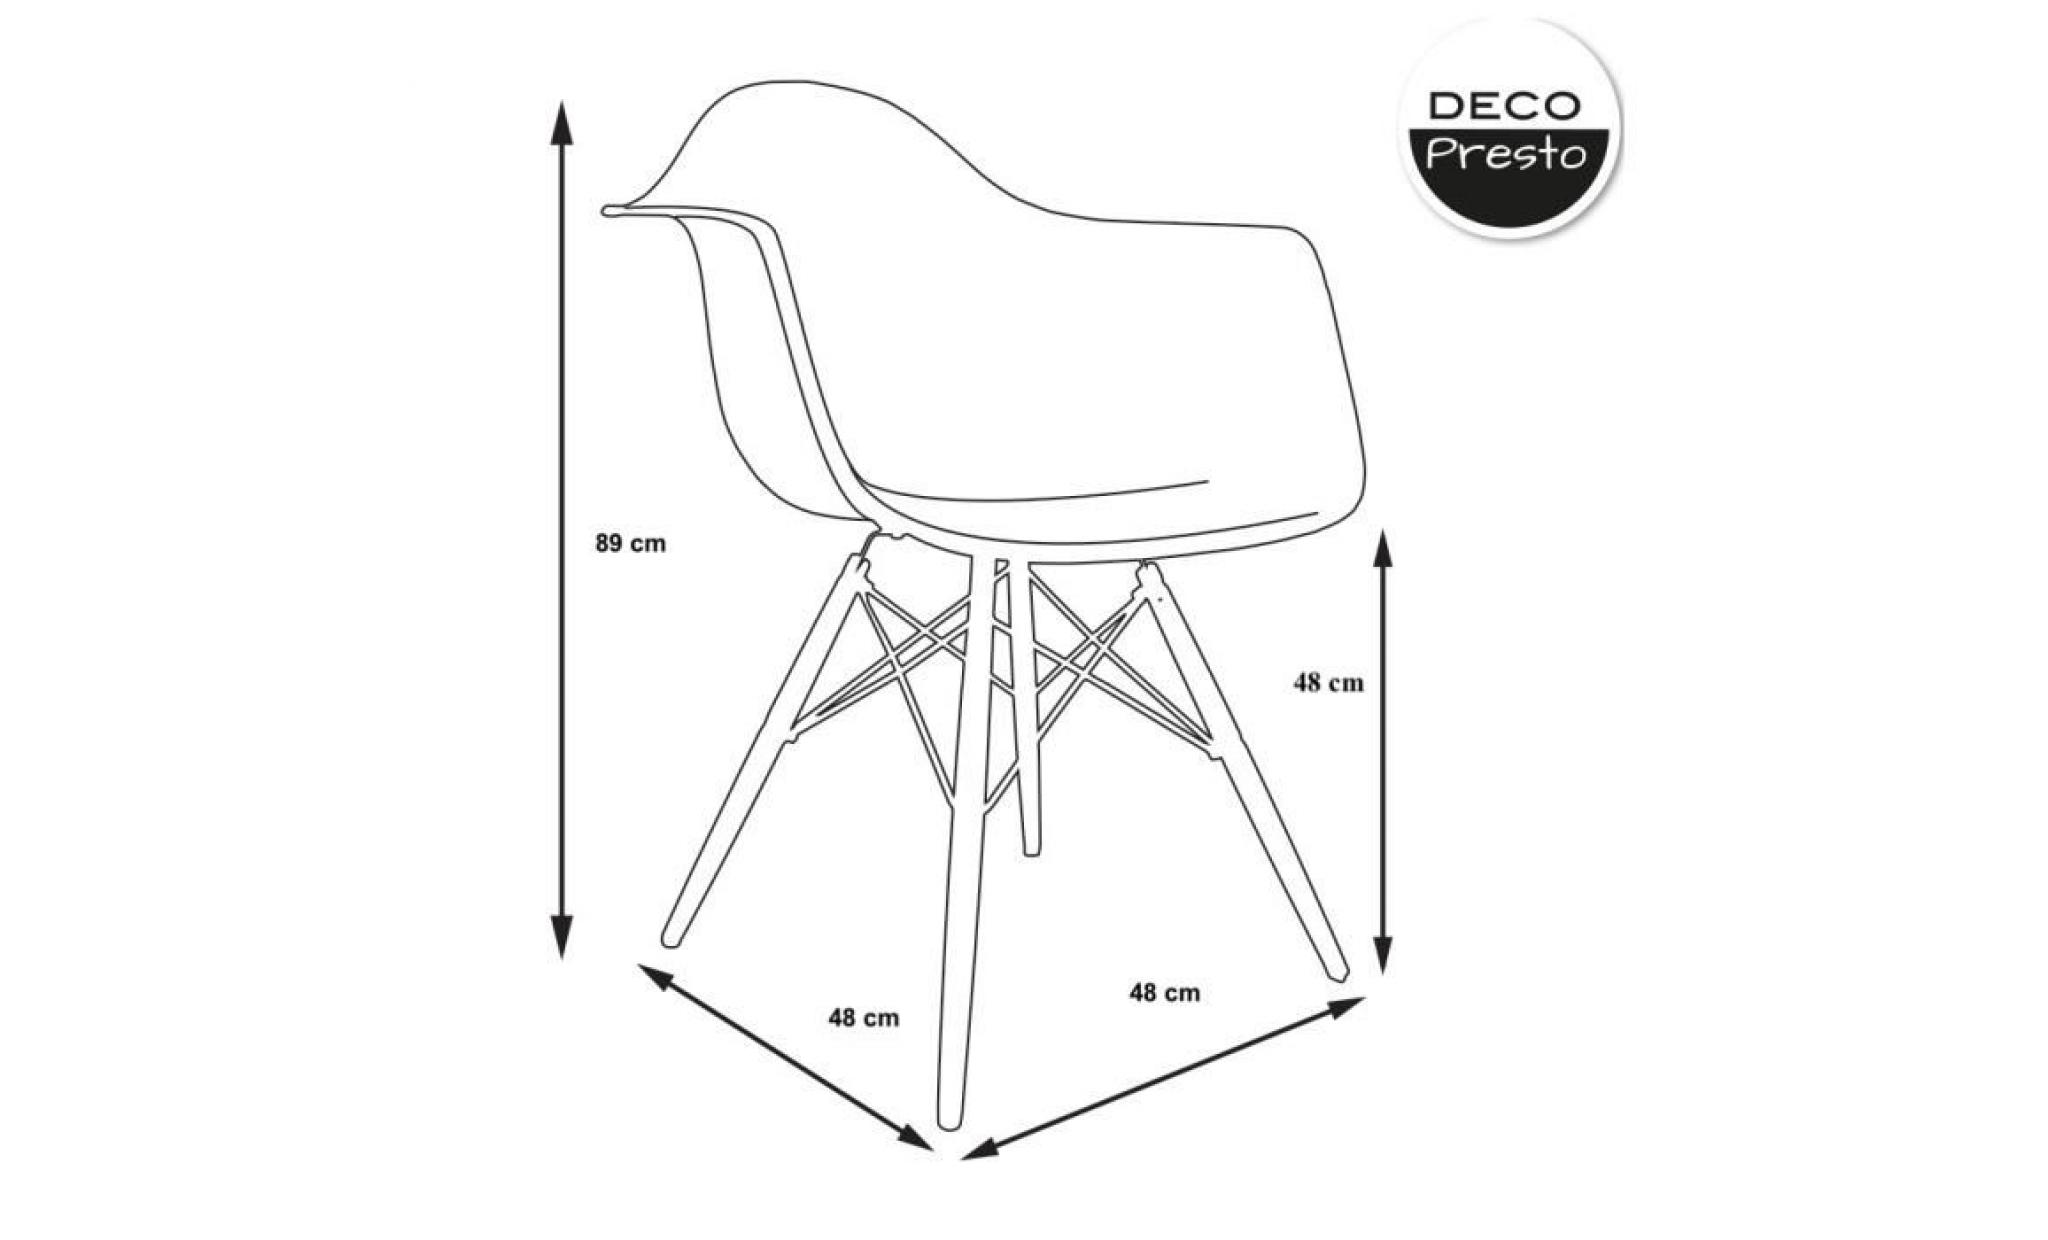 1 x fauteuil design scandinave haut. 48 cm noisette pieds: bois naturel decopresto dp dawl48 mc 1 pas cher